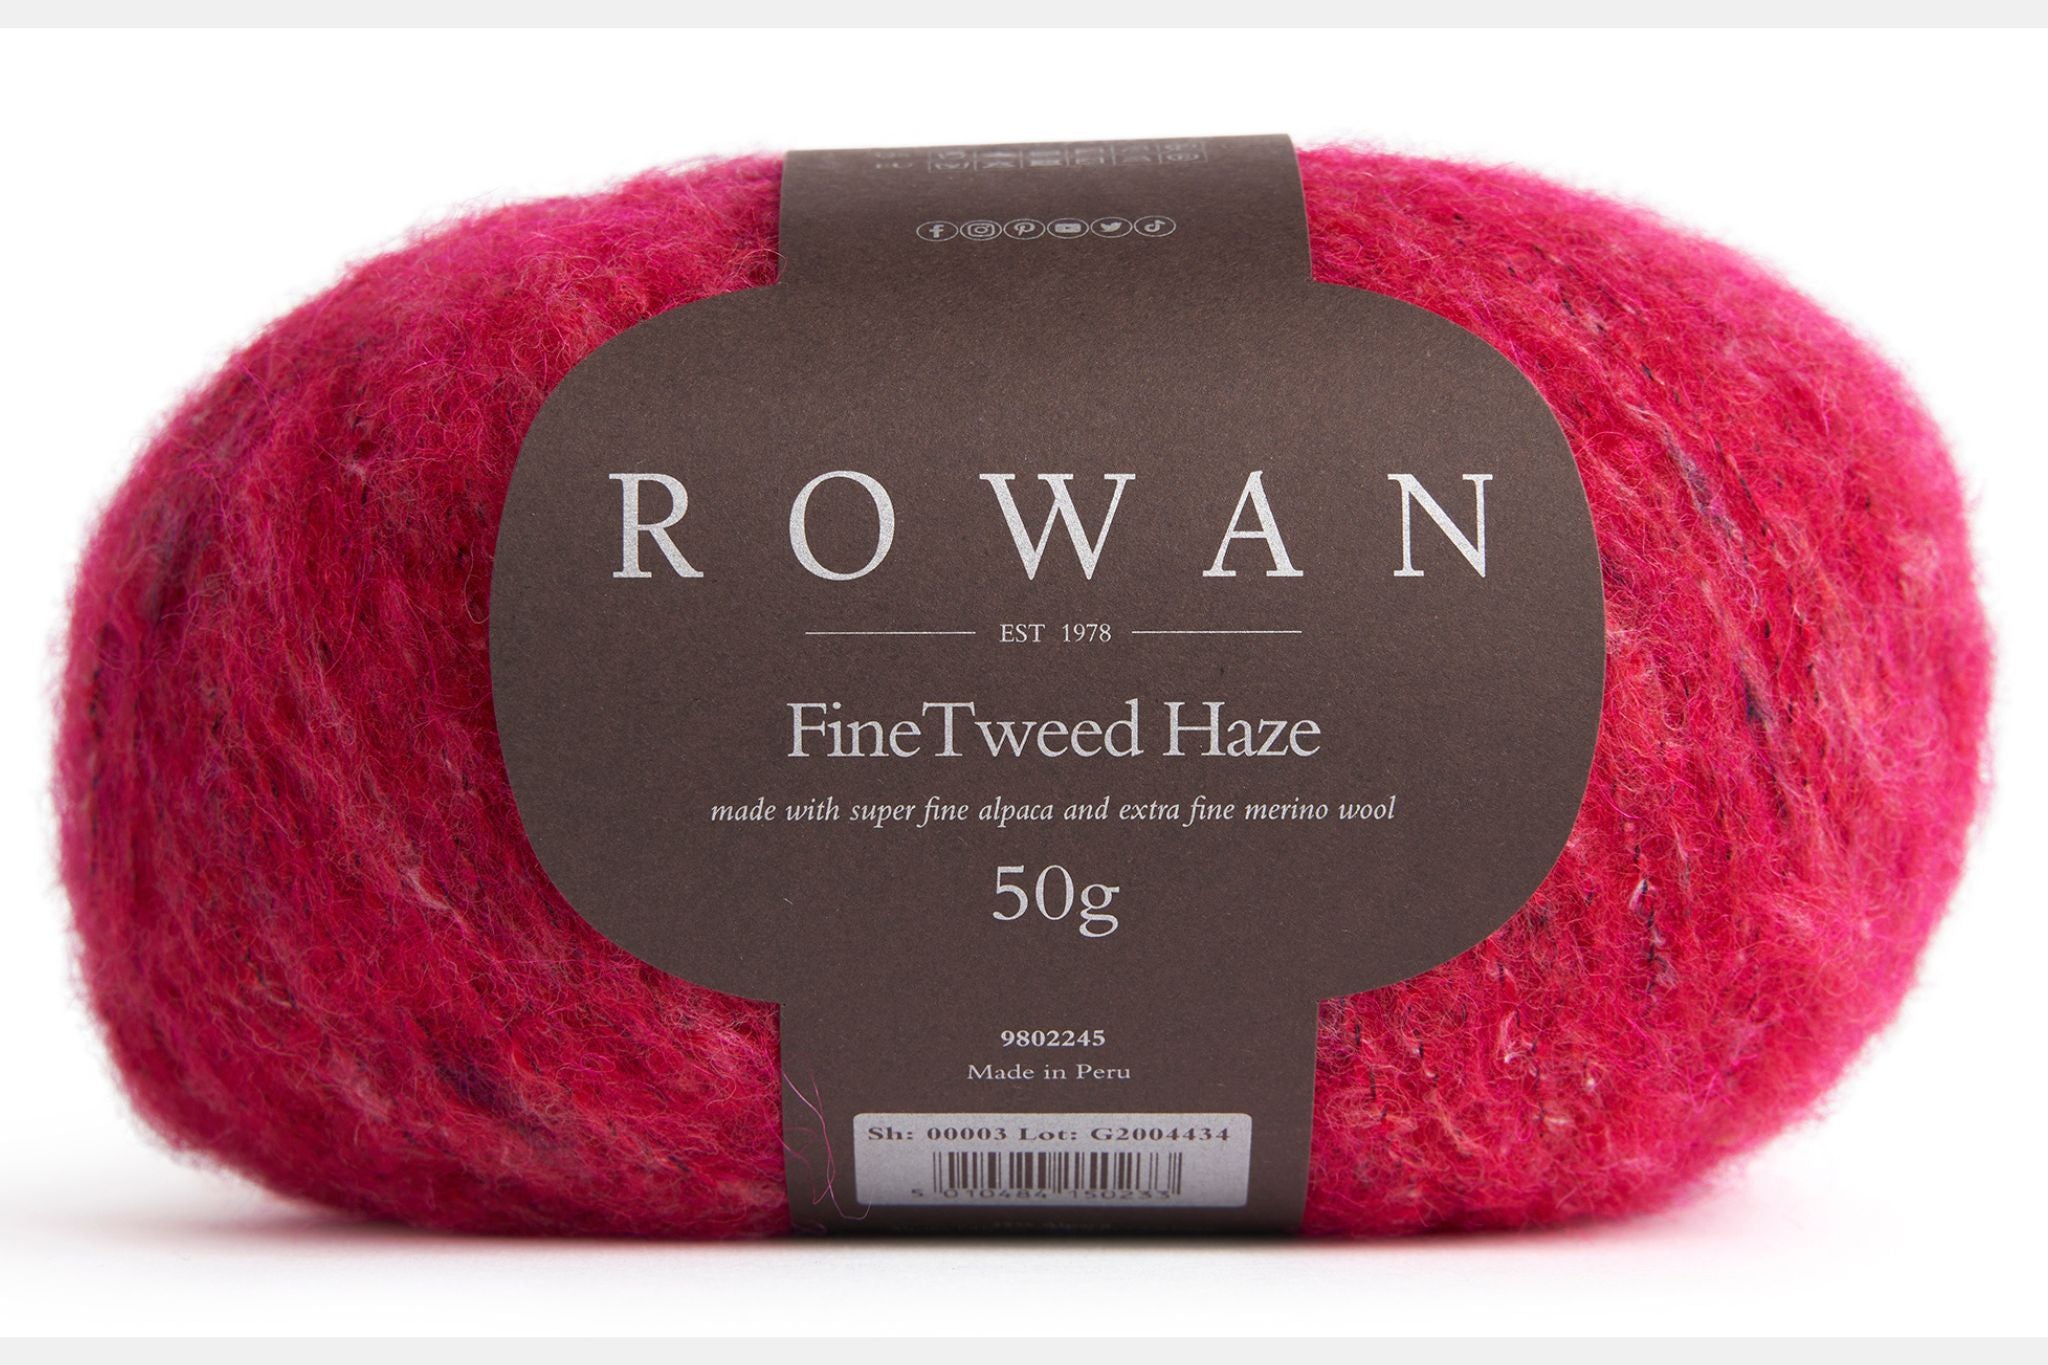 Rowan Fine Tweed Haze in Rose